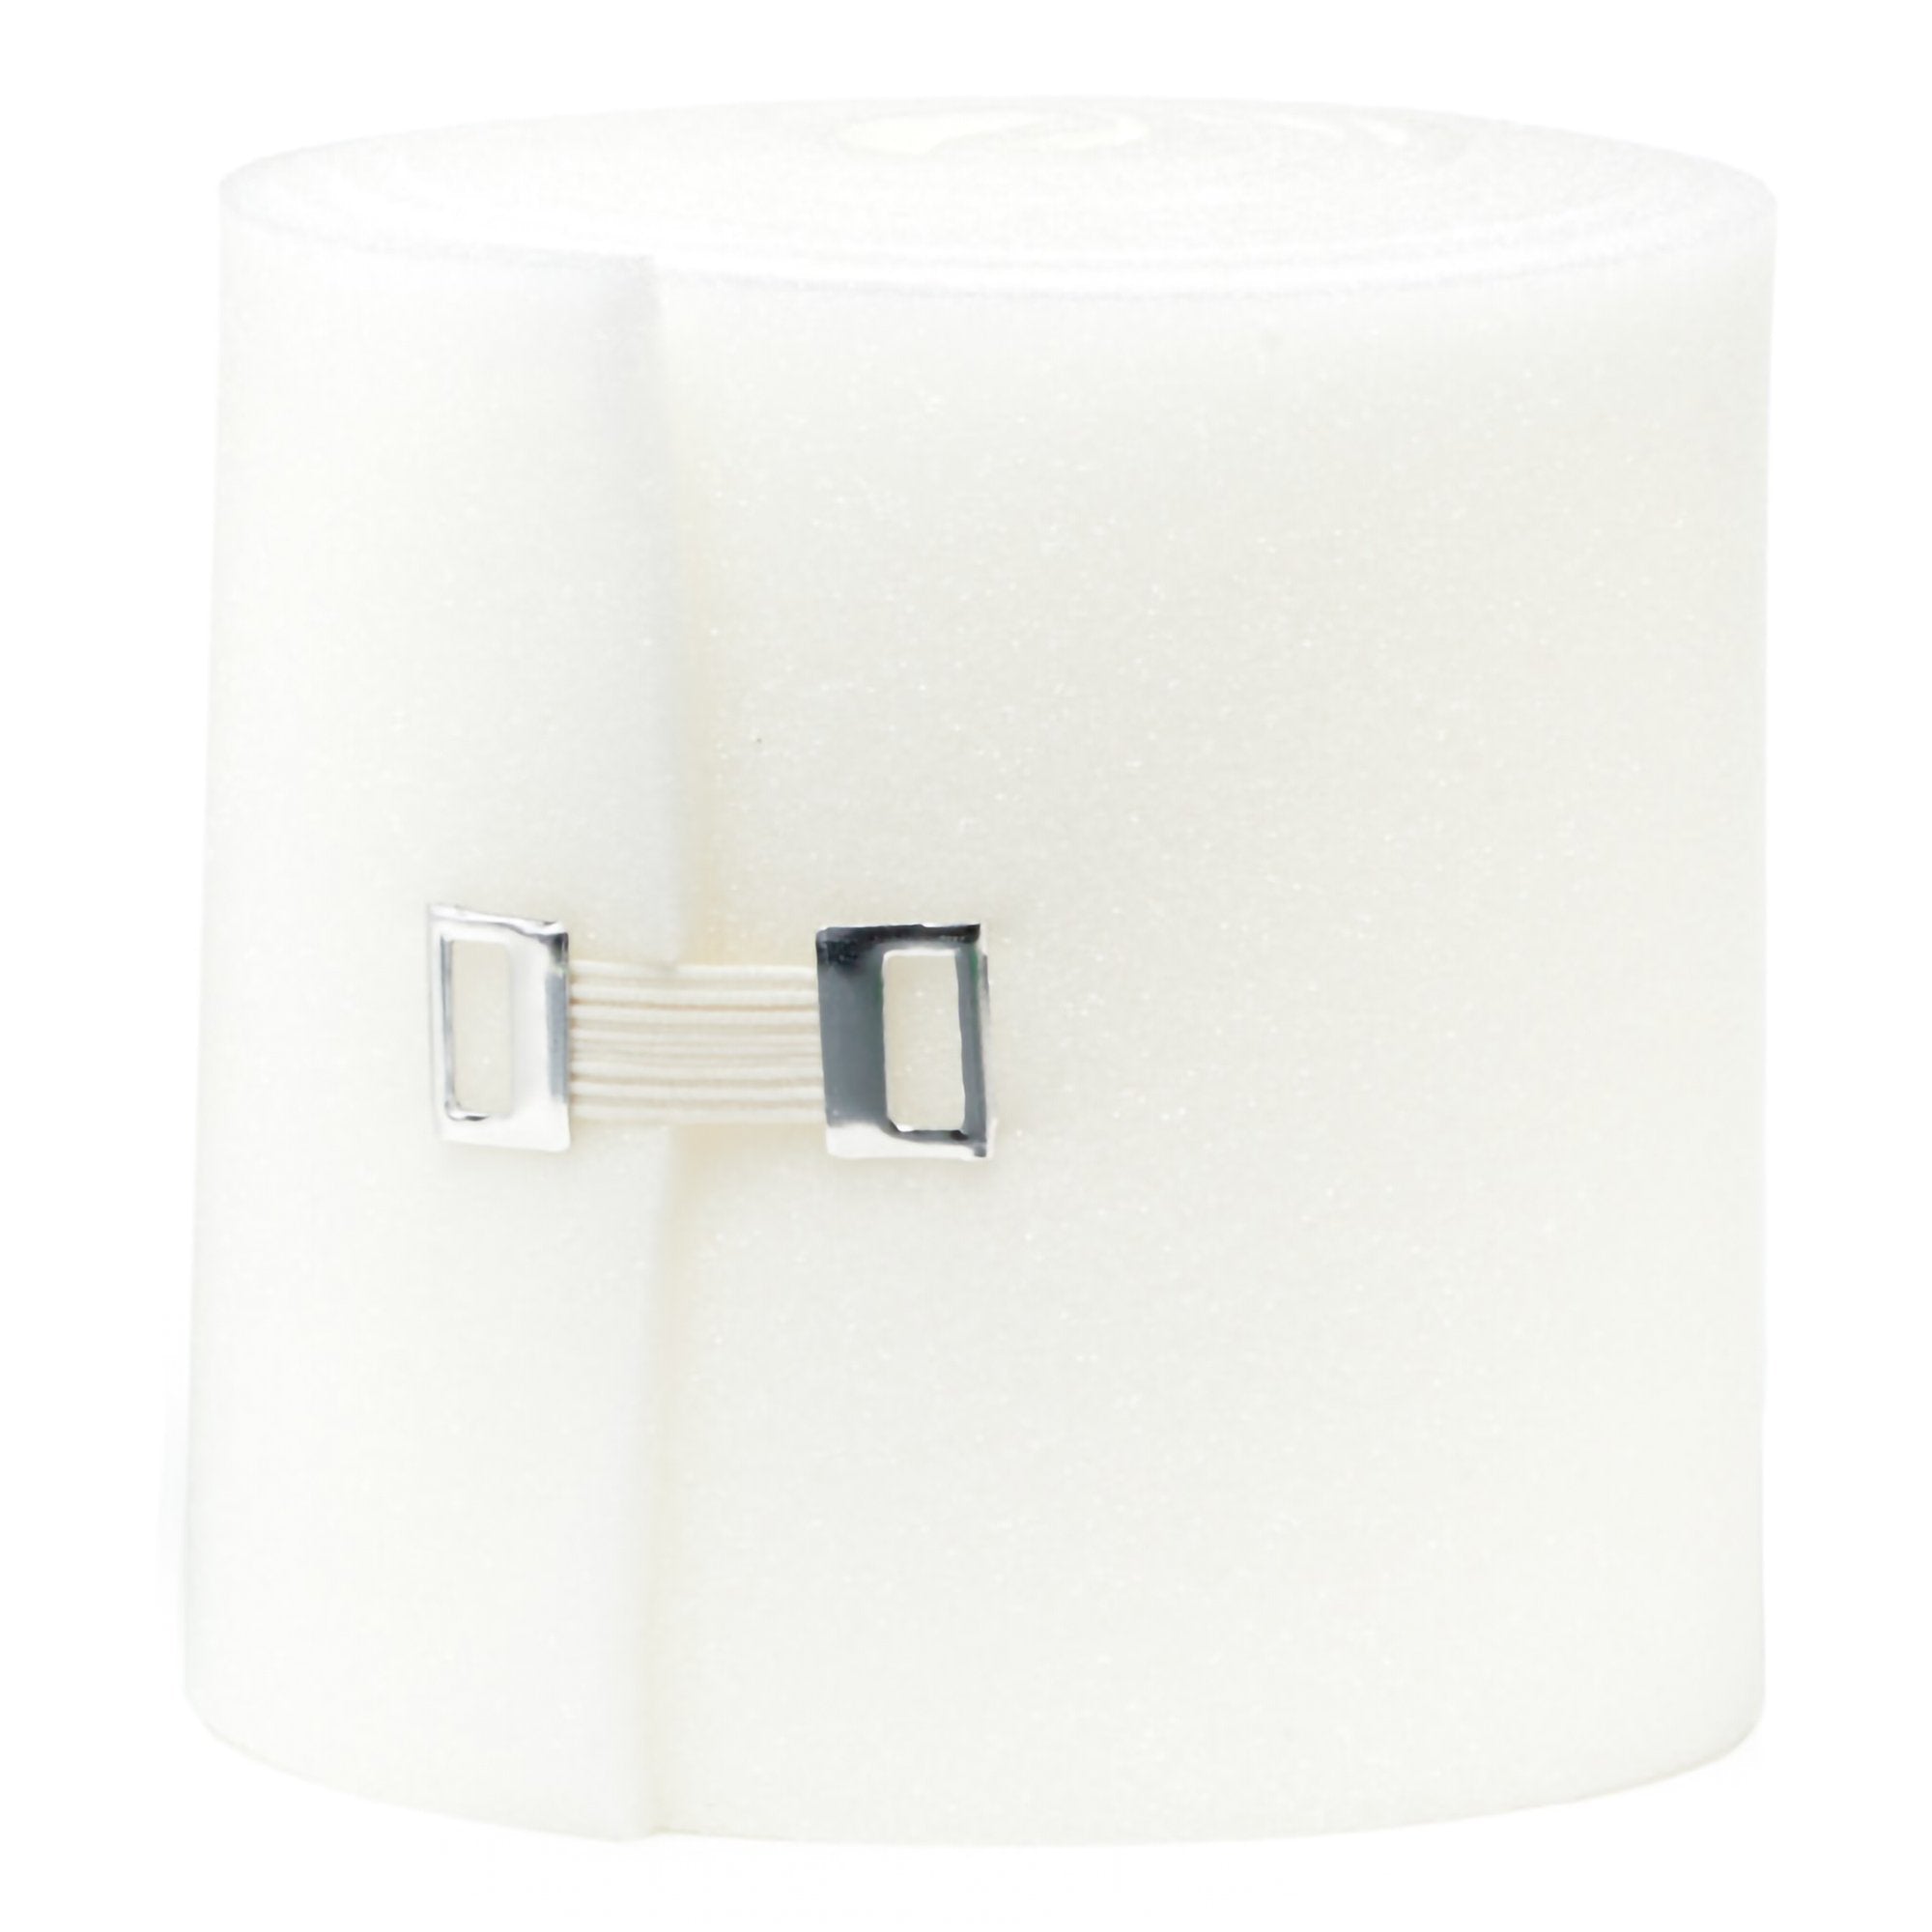 Foam Padding Rosidal® soft 4 X 0.16 Inch, Polyurethane Foam